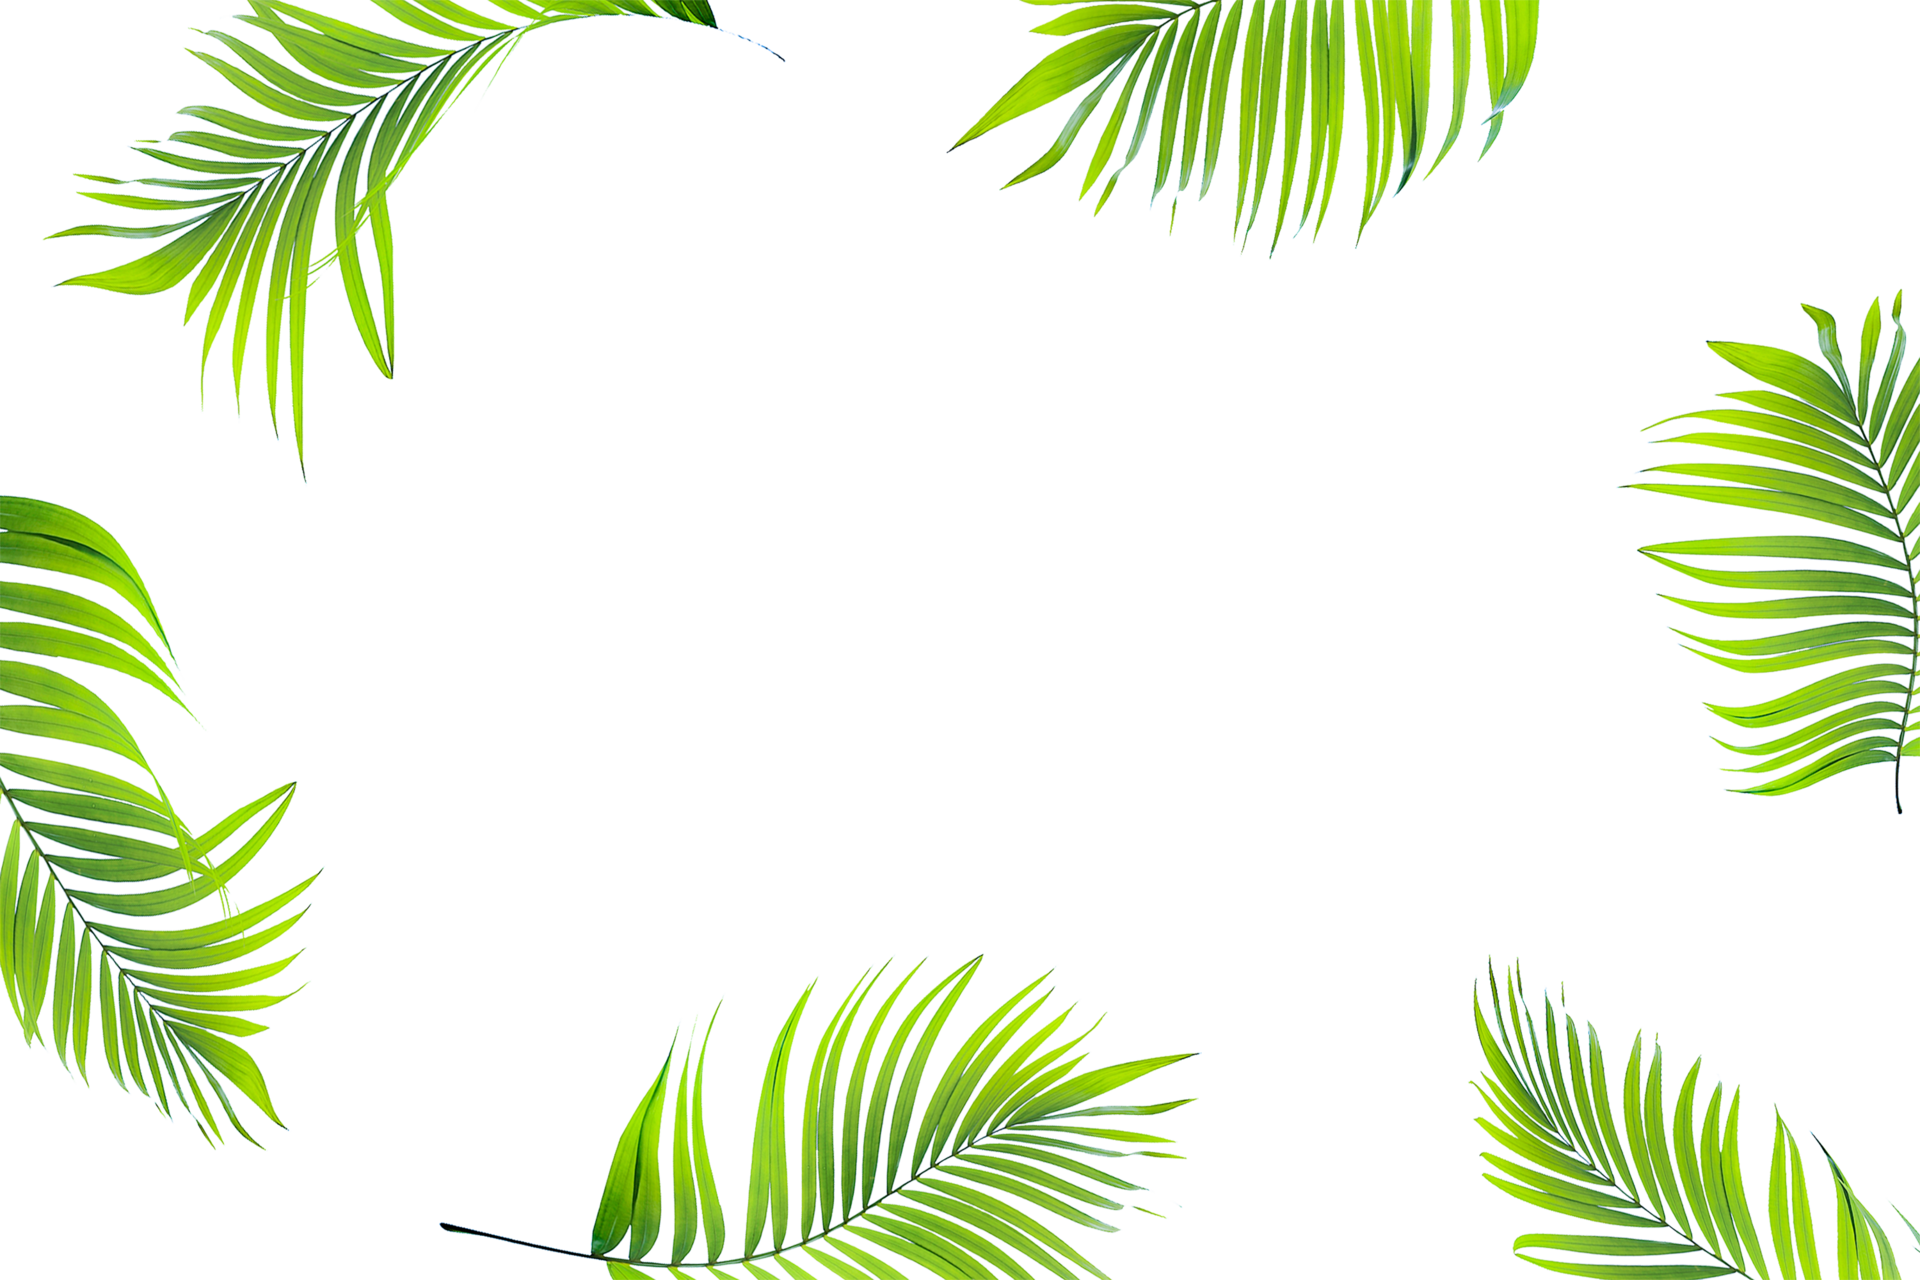 Hãy chiêm ngưỡng những lá cây xanh nhiệt đới miễn phí tuyệt đẹp, với những hình ảnh sống động và màu sắc tươi tắn chỉ trong vài giây. Bạn sẽ cảm nhận được vẻ đẹp của thiên nhiên và những loài cây nhiệt đới đầy mê hoặc này.